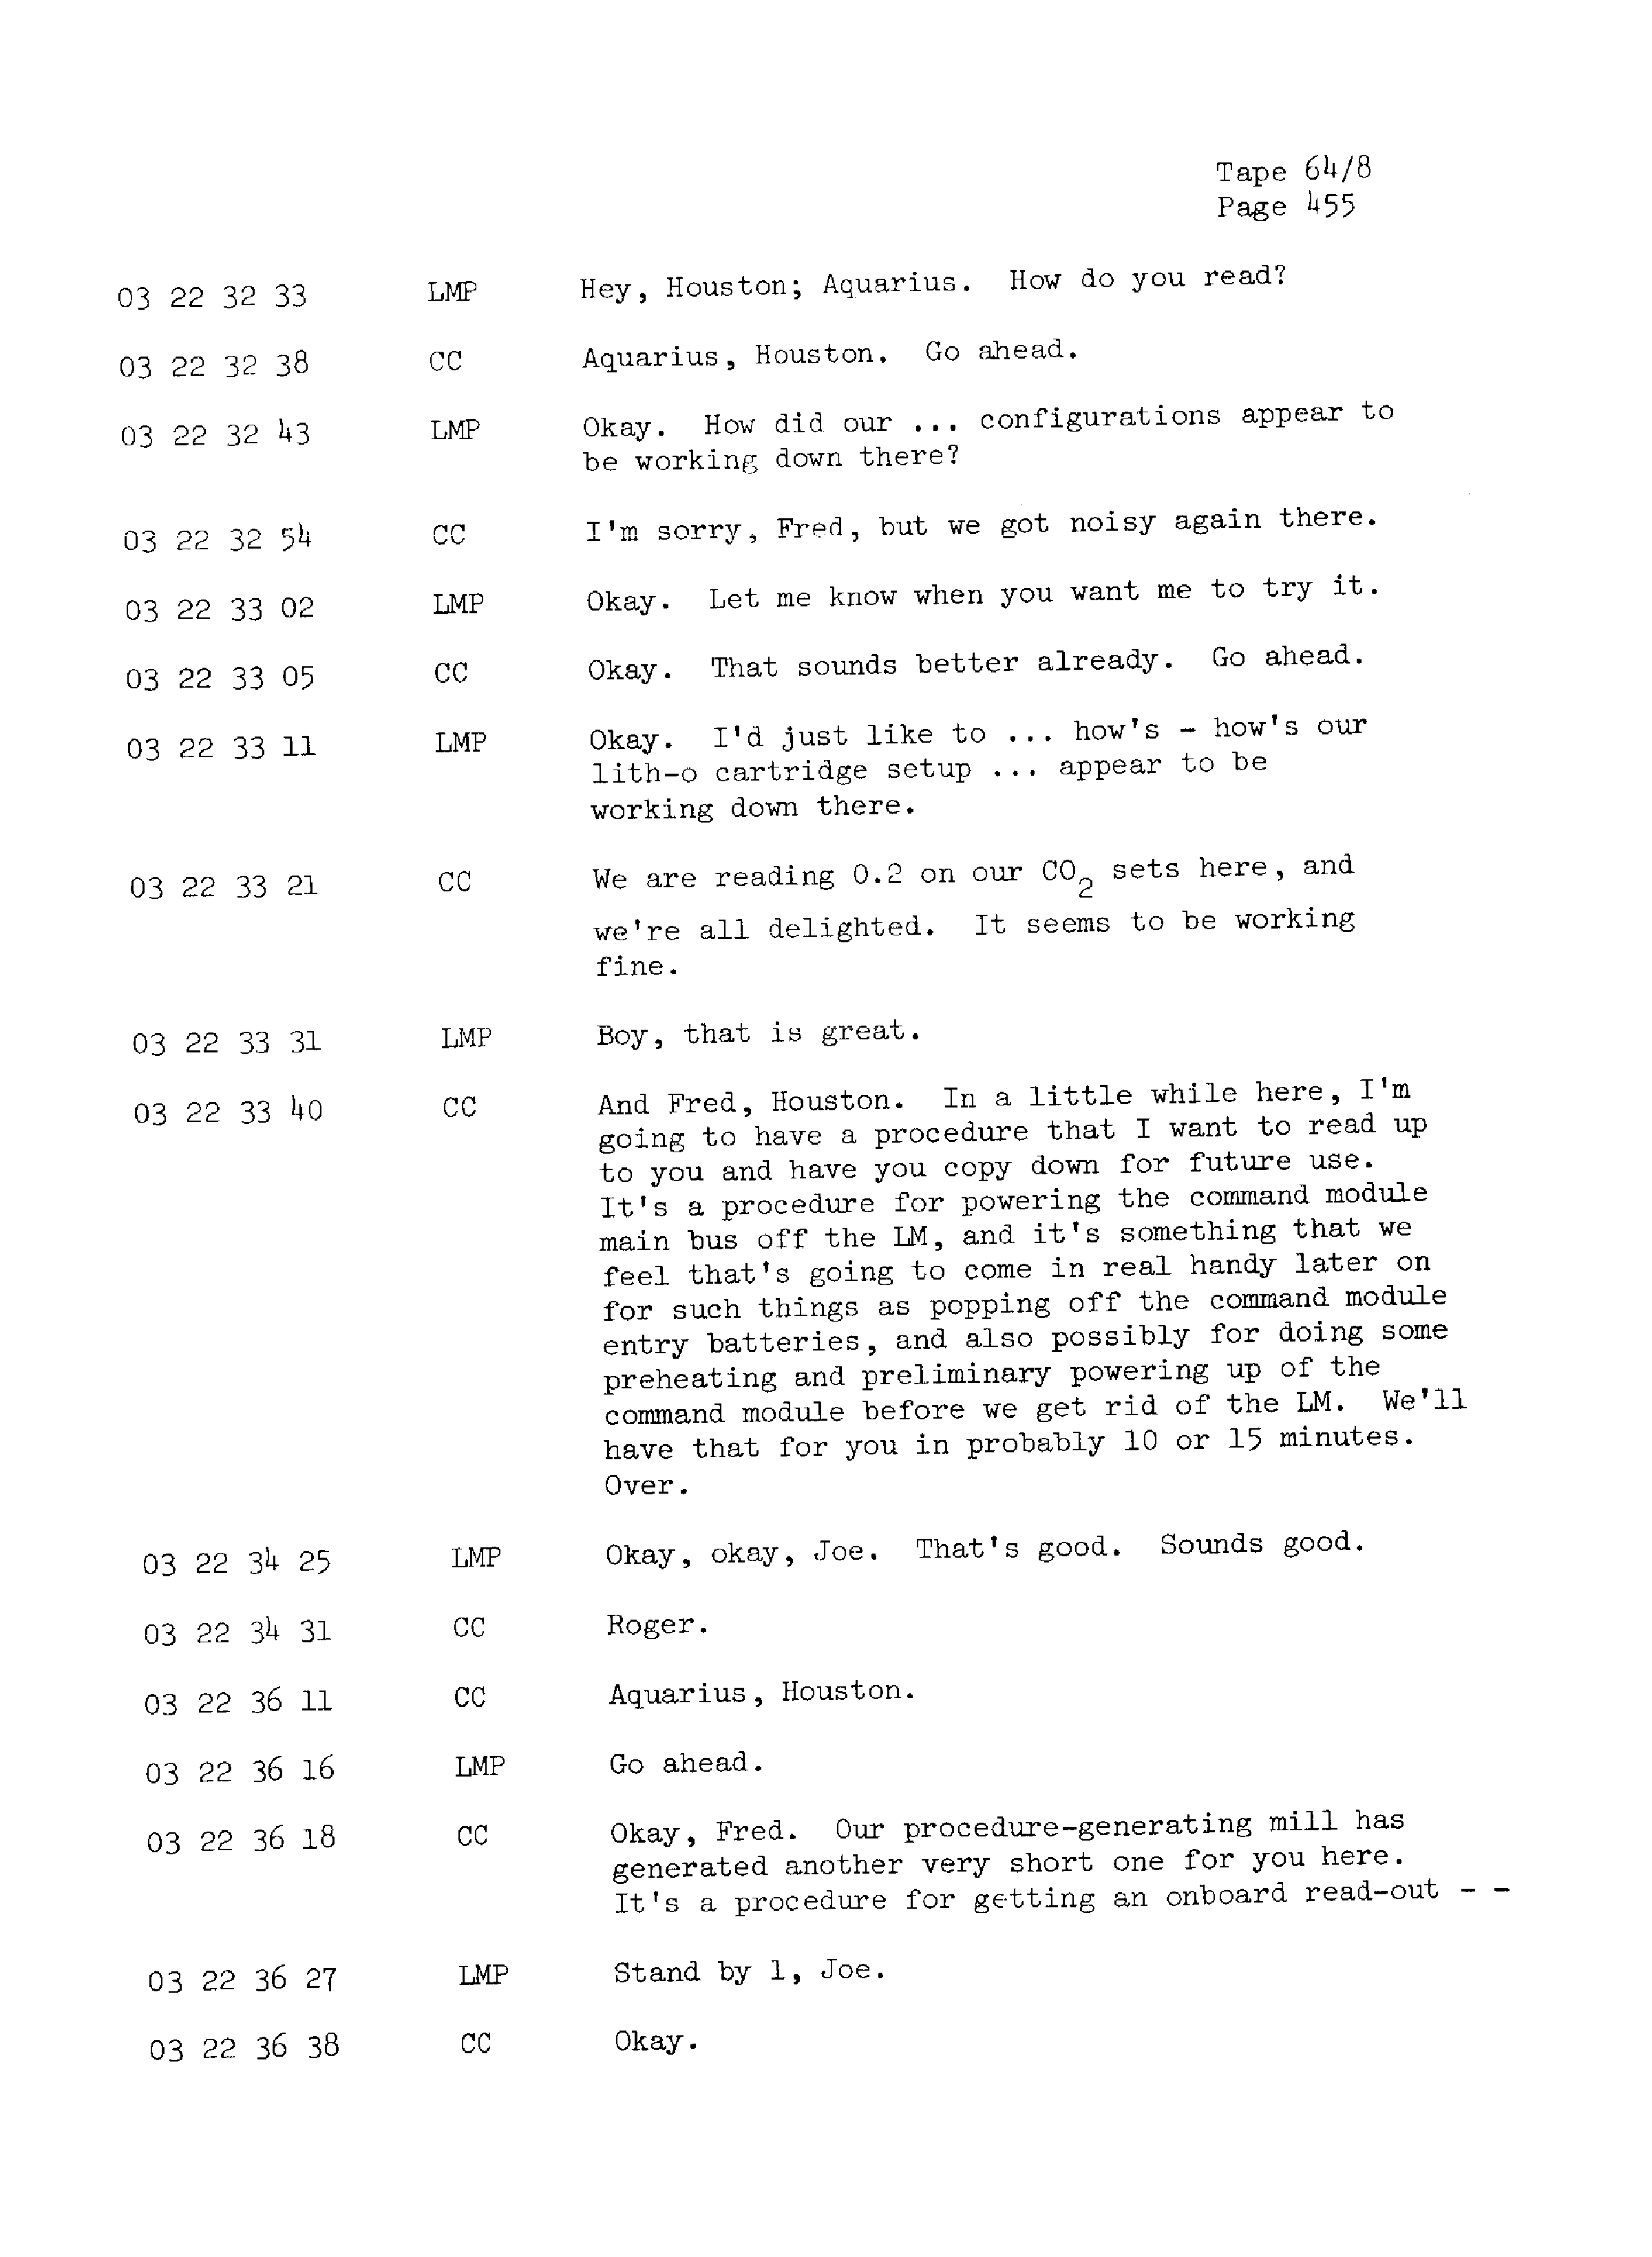 Page 462 of Apollo 13’s original transcript